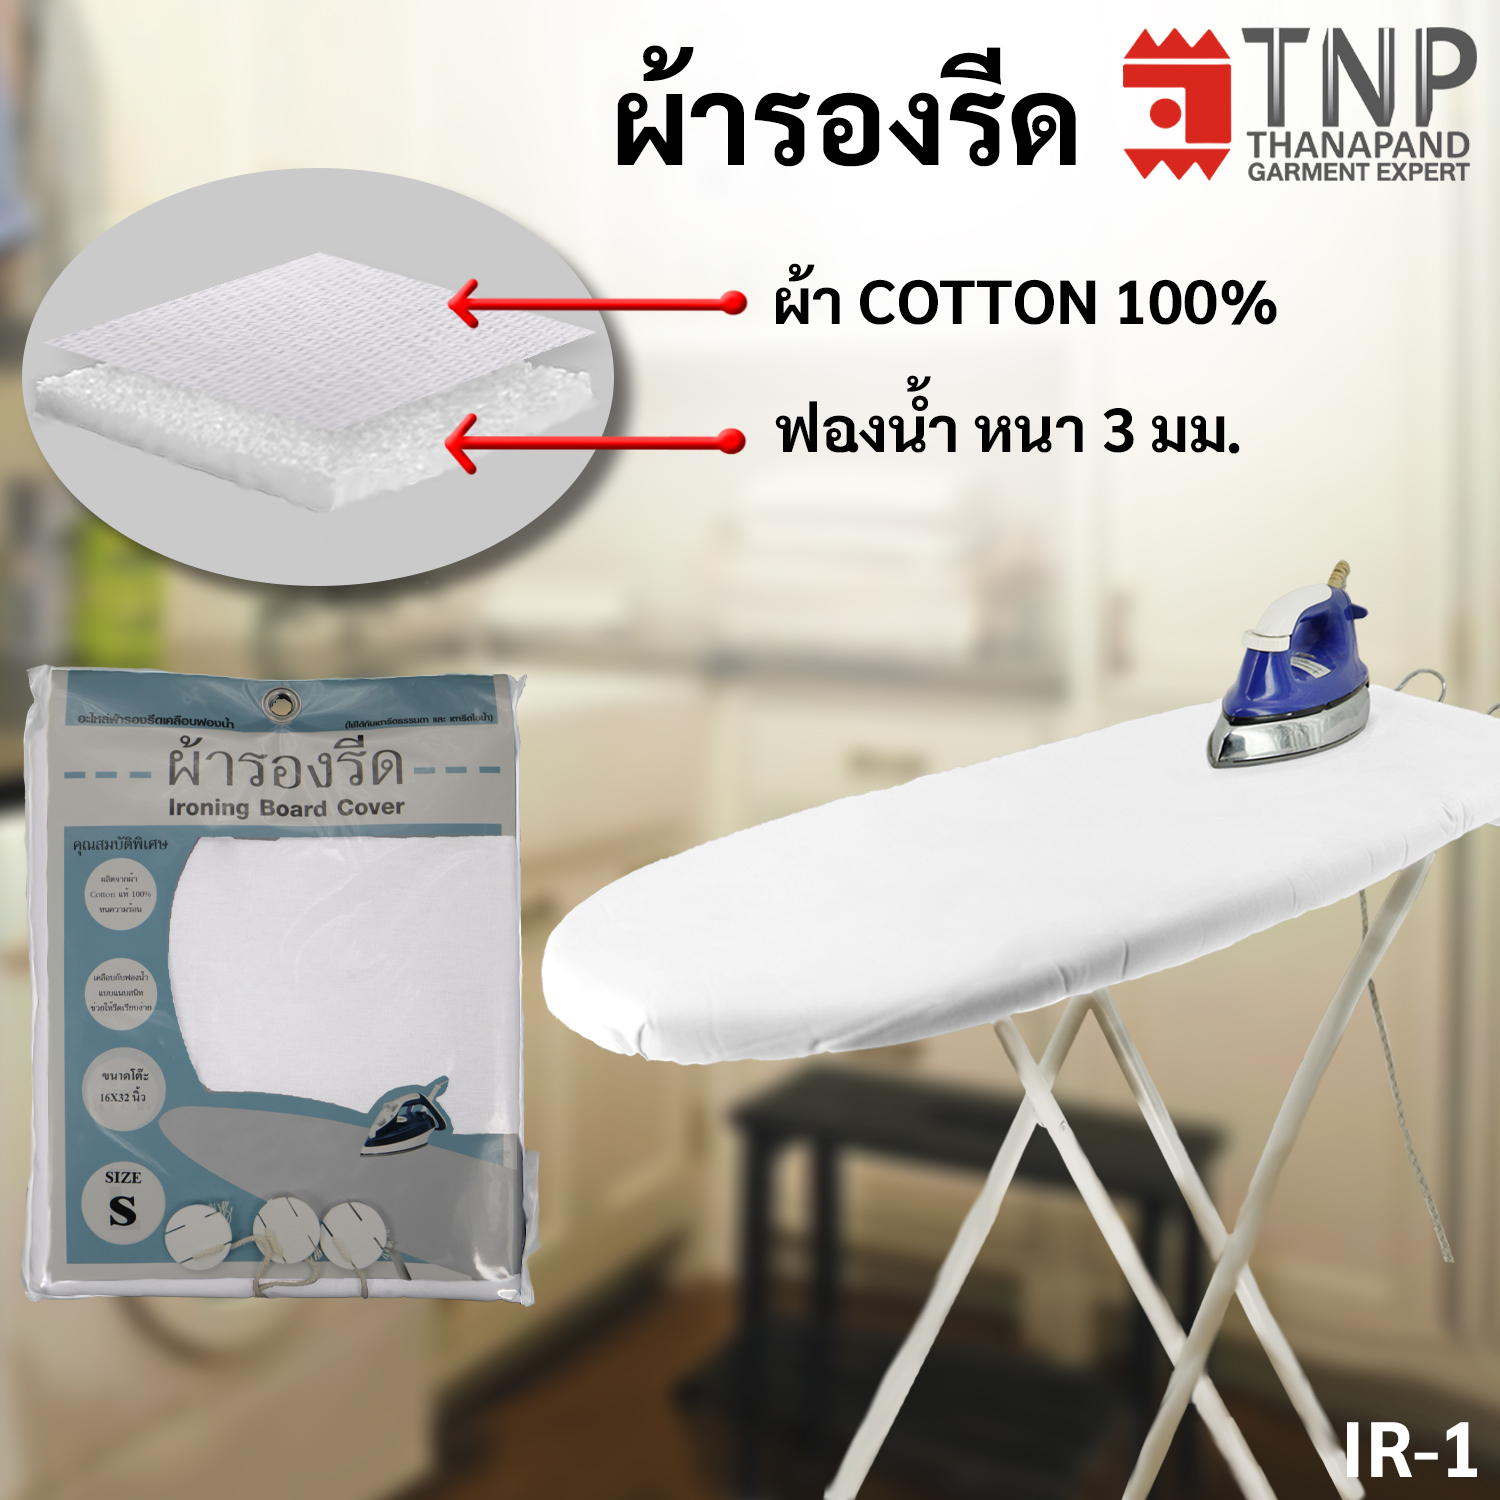 ผ้ารองรีดCotton 100% เคลือบฟองน้ำ สำหรับโต๊ะนั่งรีดและยืนรีด รหัส: IR  (TNP-Thanapand ฐานะภัณฑ์)